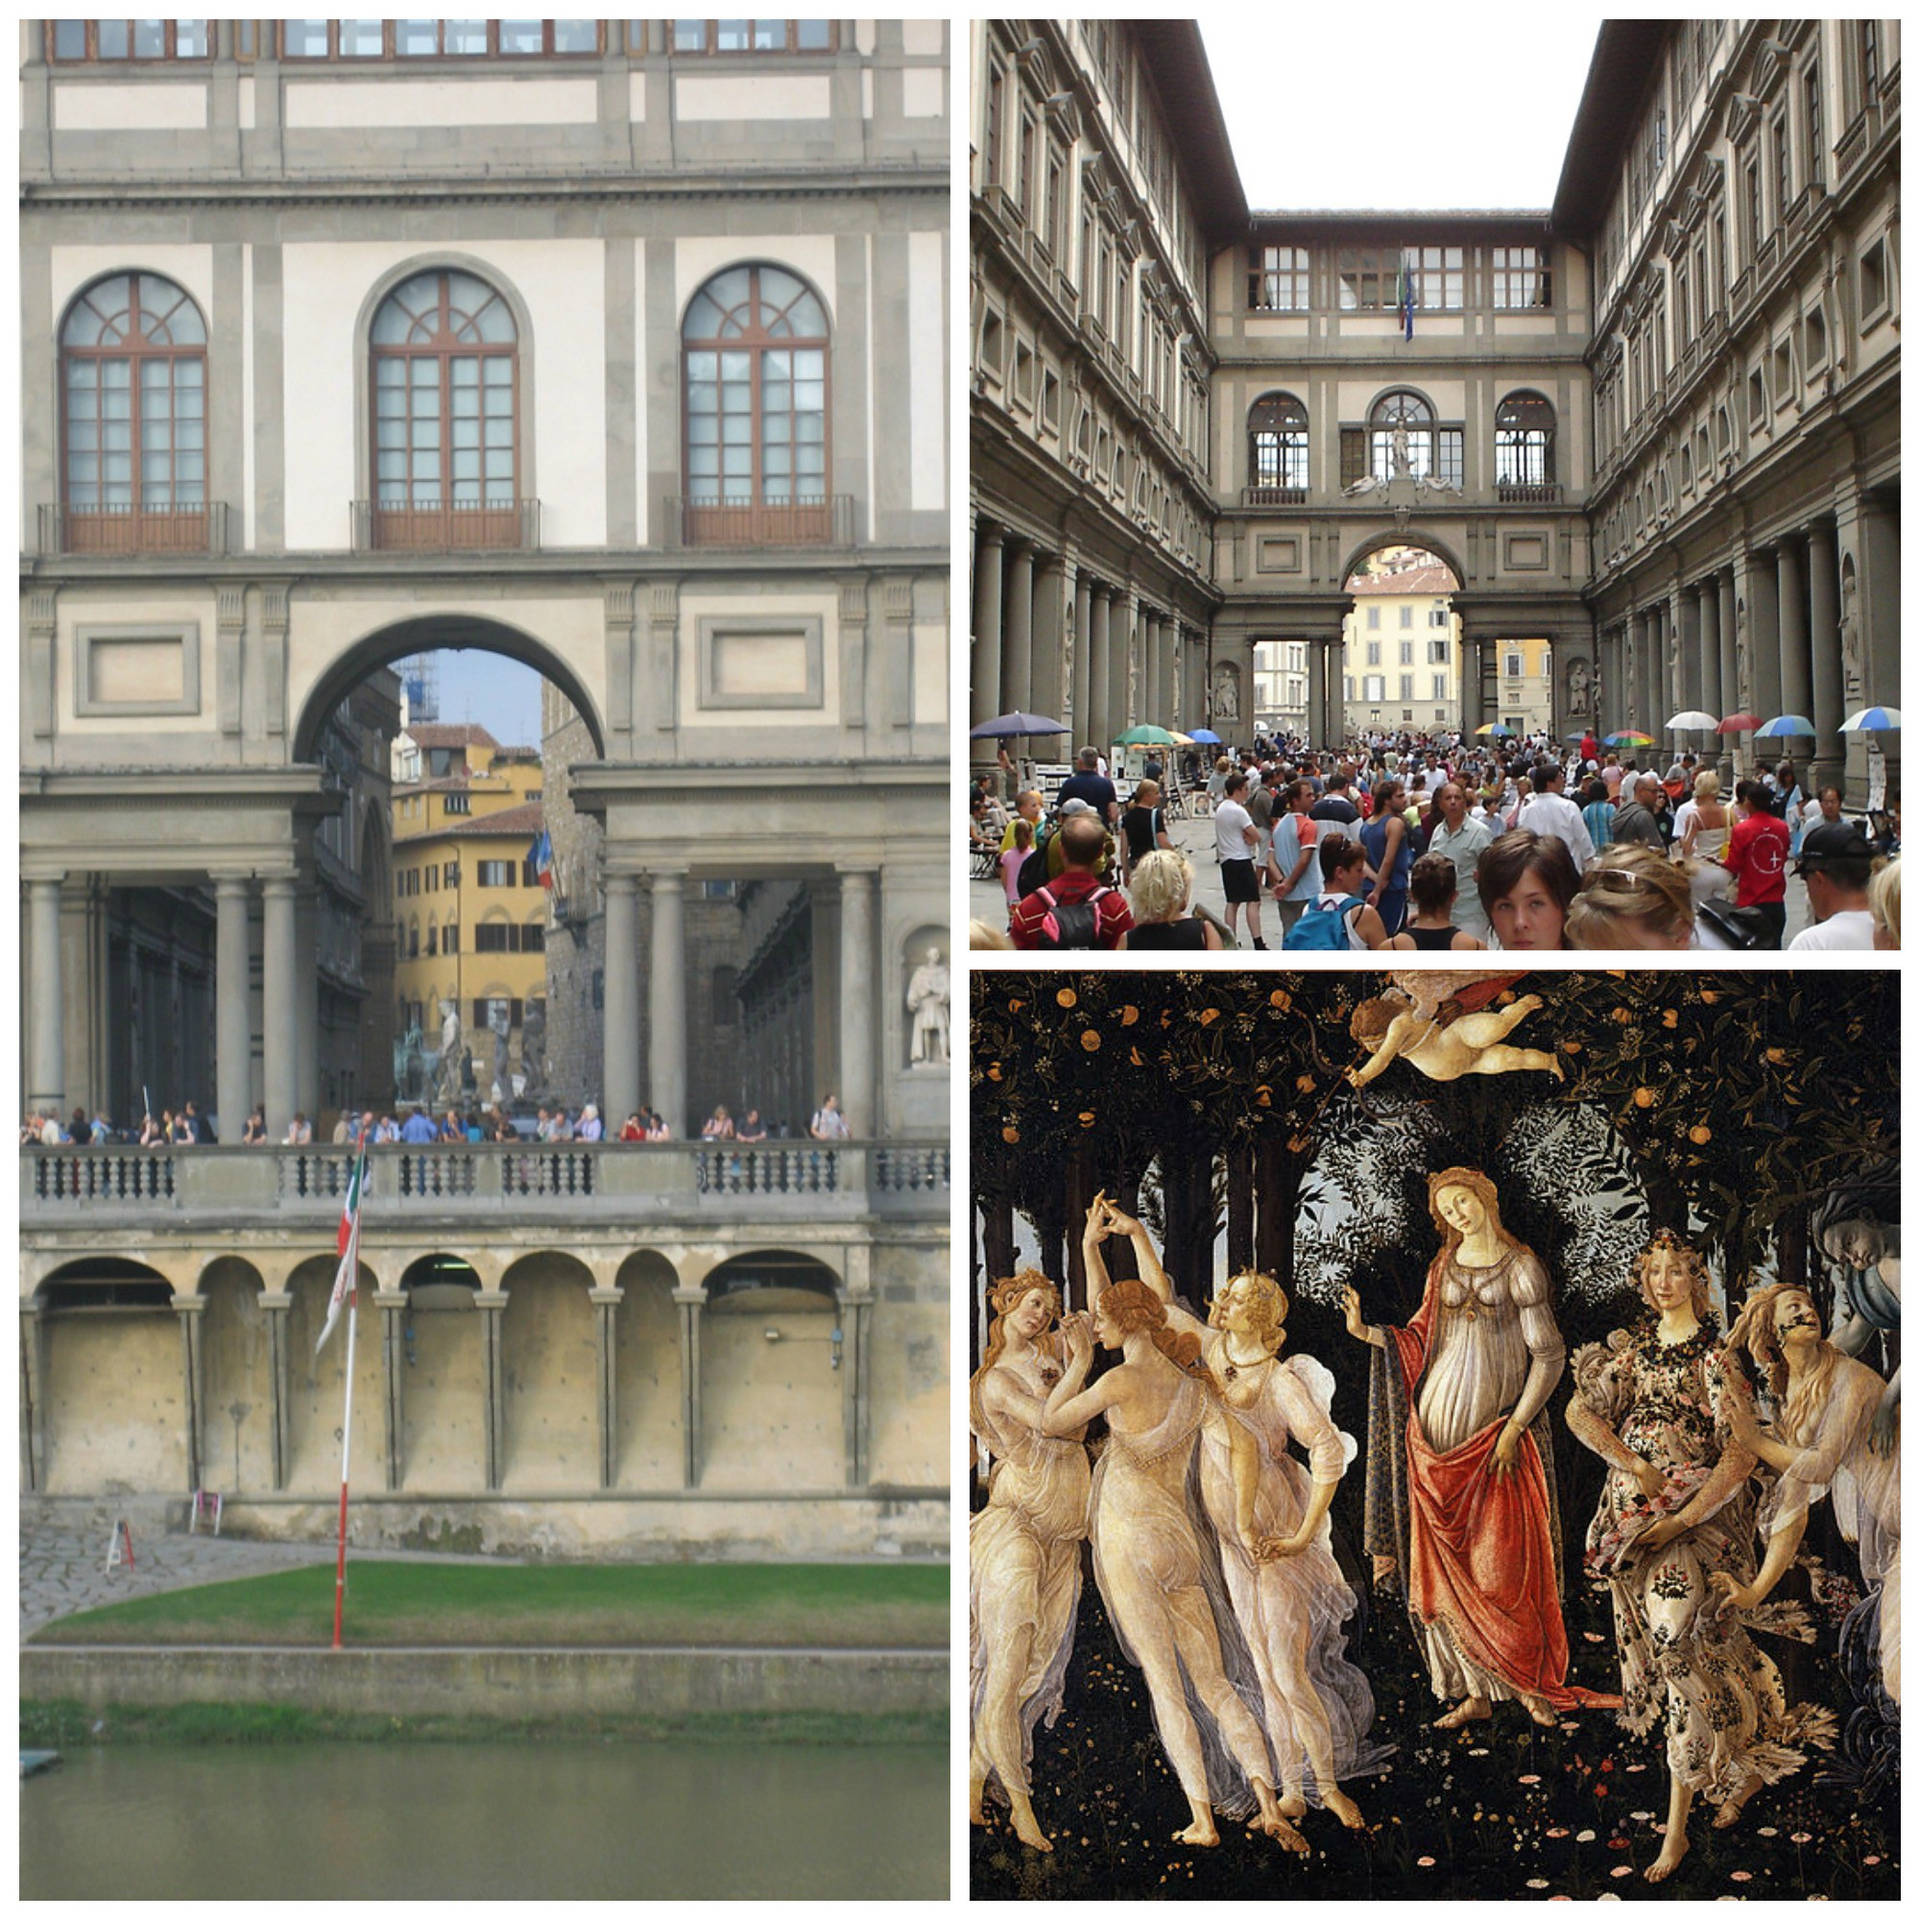 Uffizi Gallery Photo Collage Background